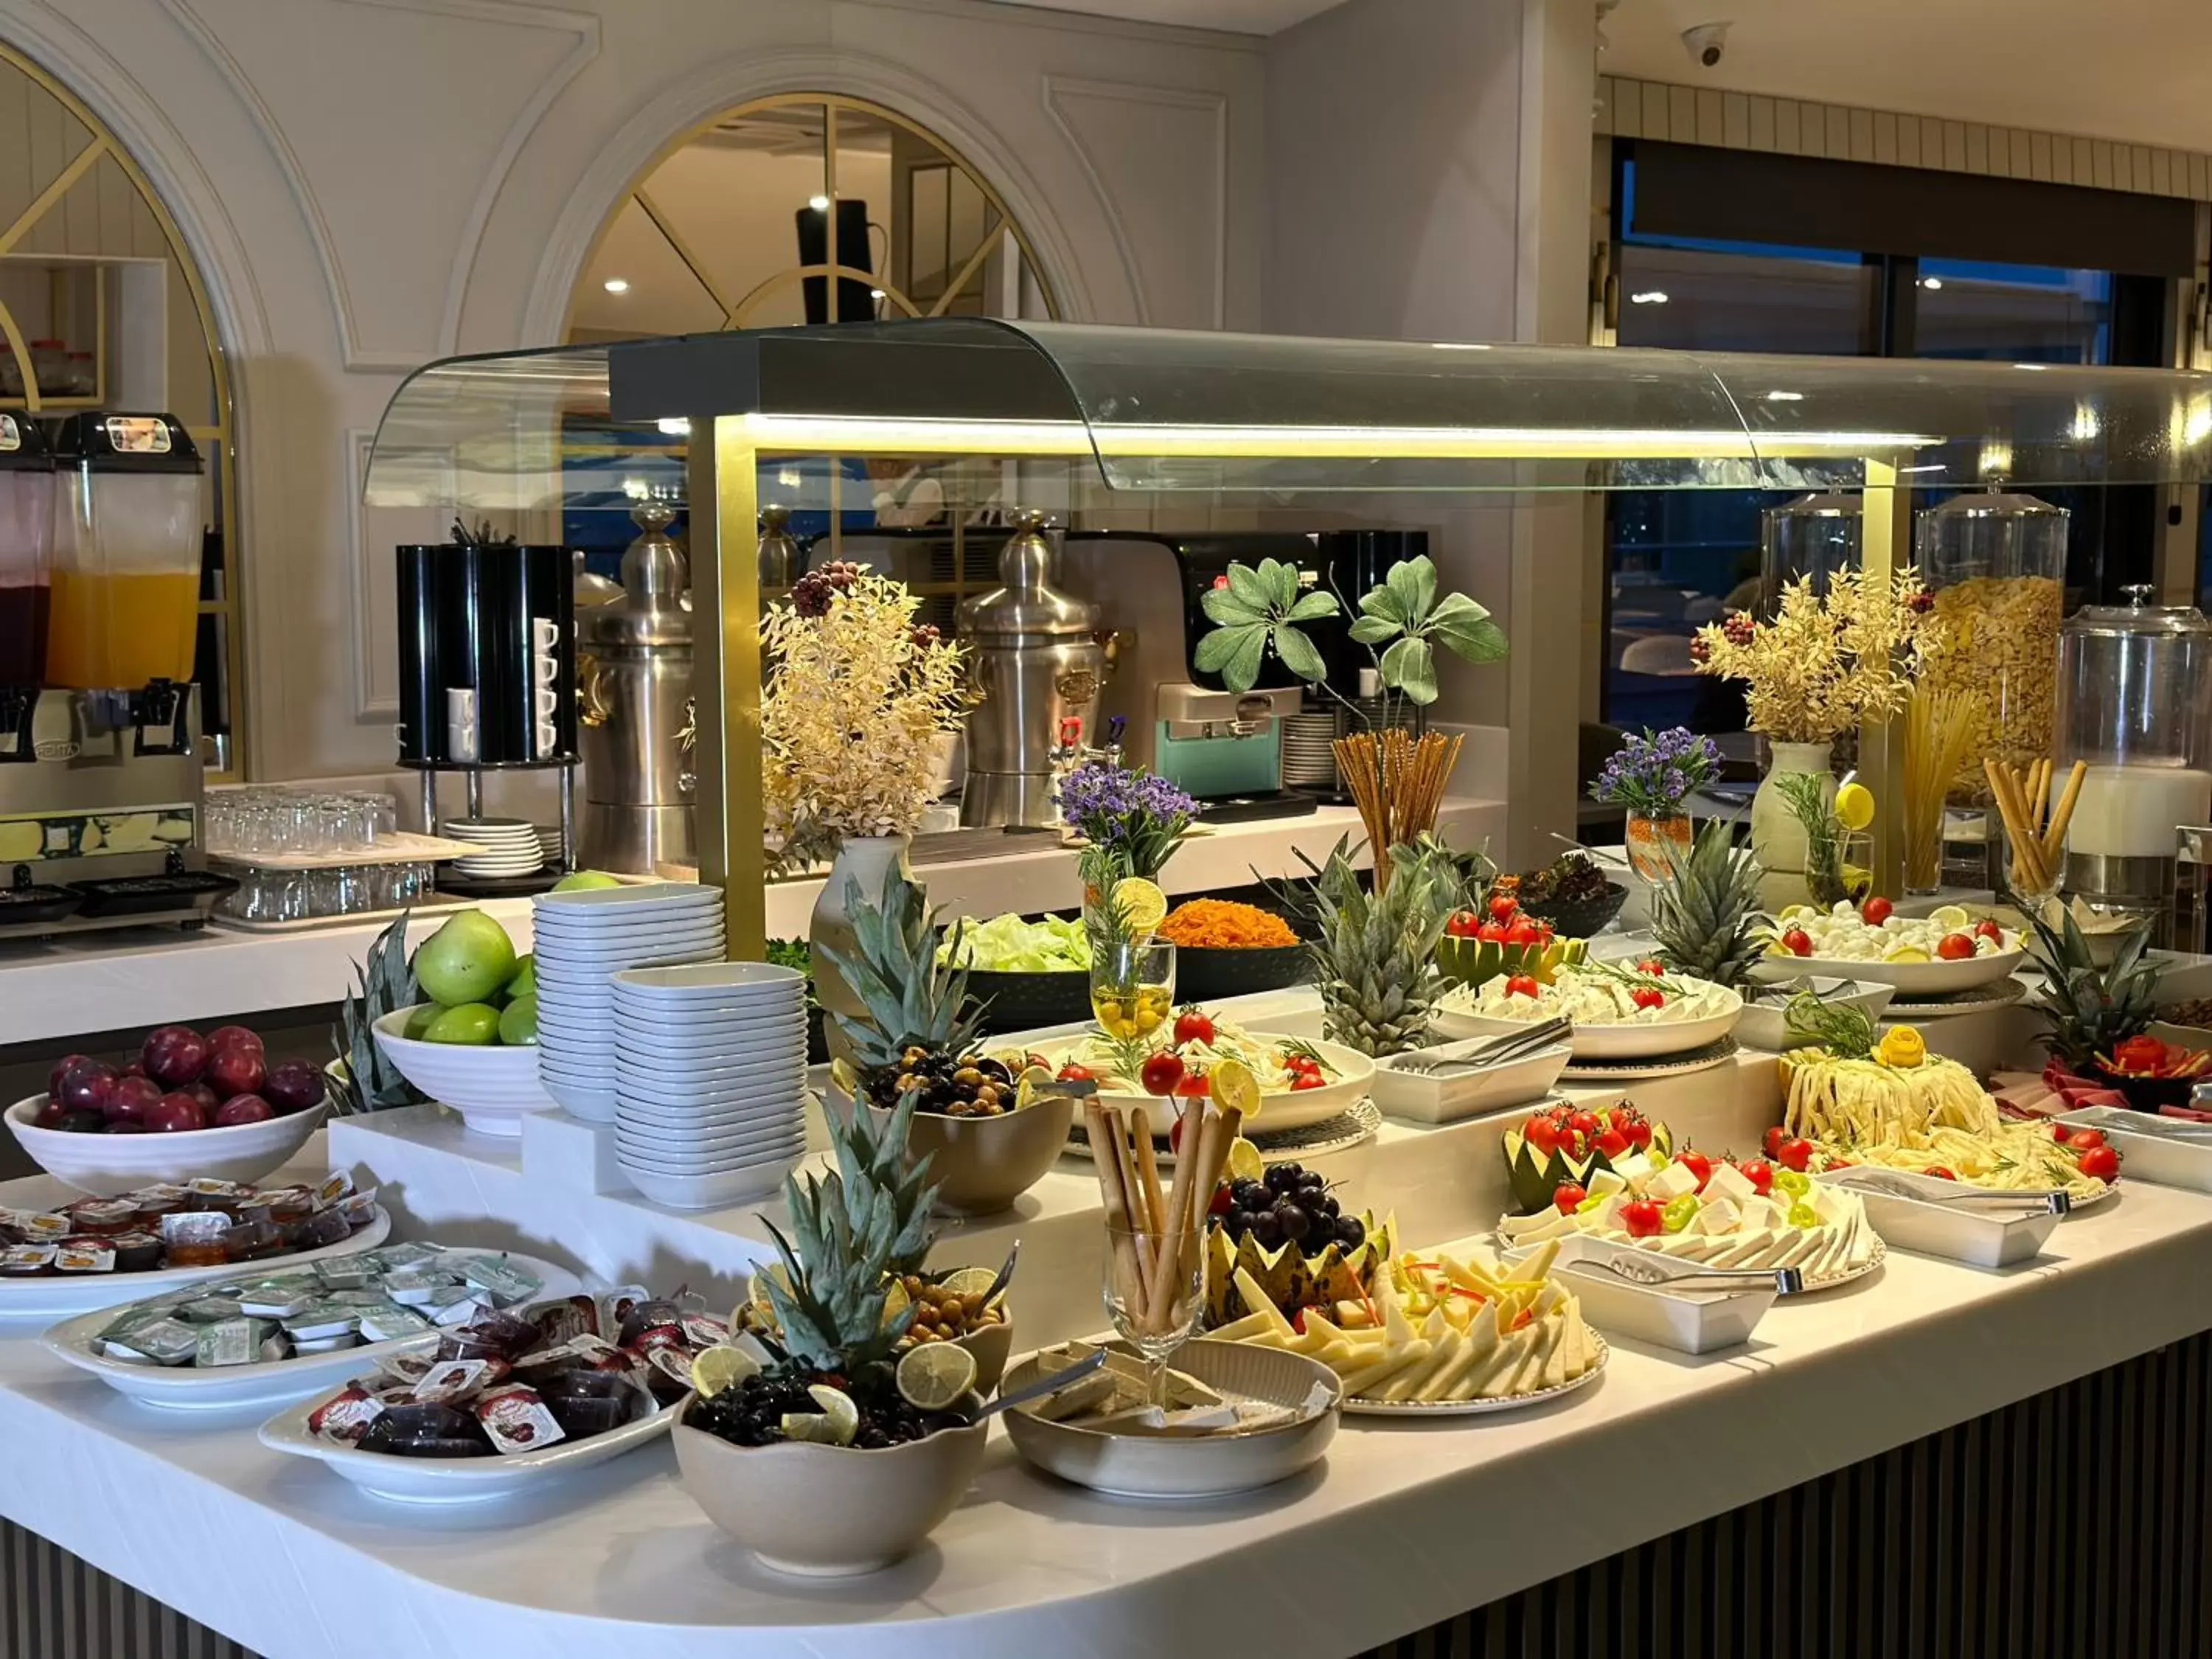 Buffet breakfast in Hotel Zurich Istanbul